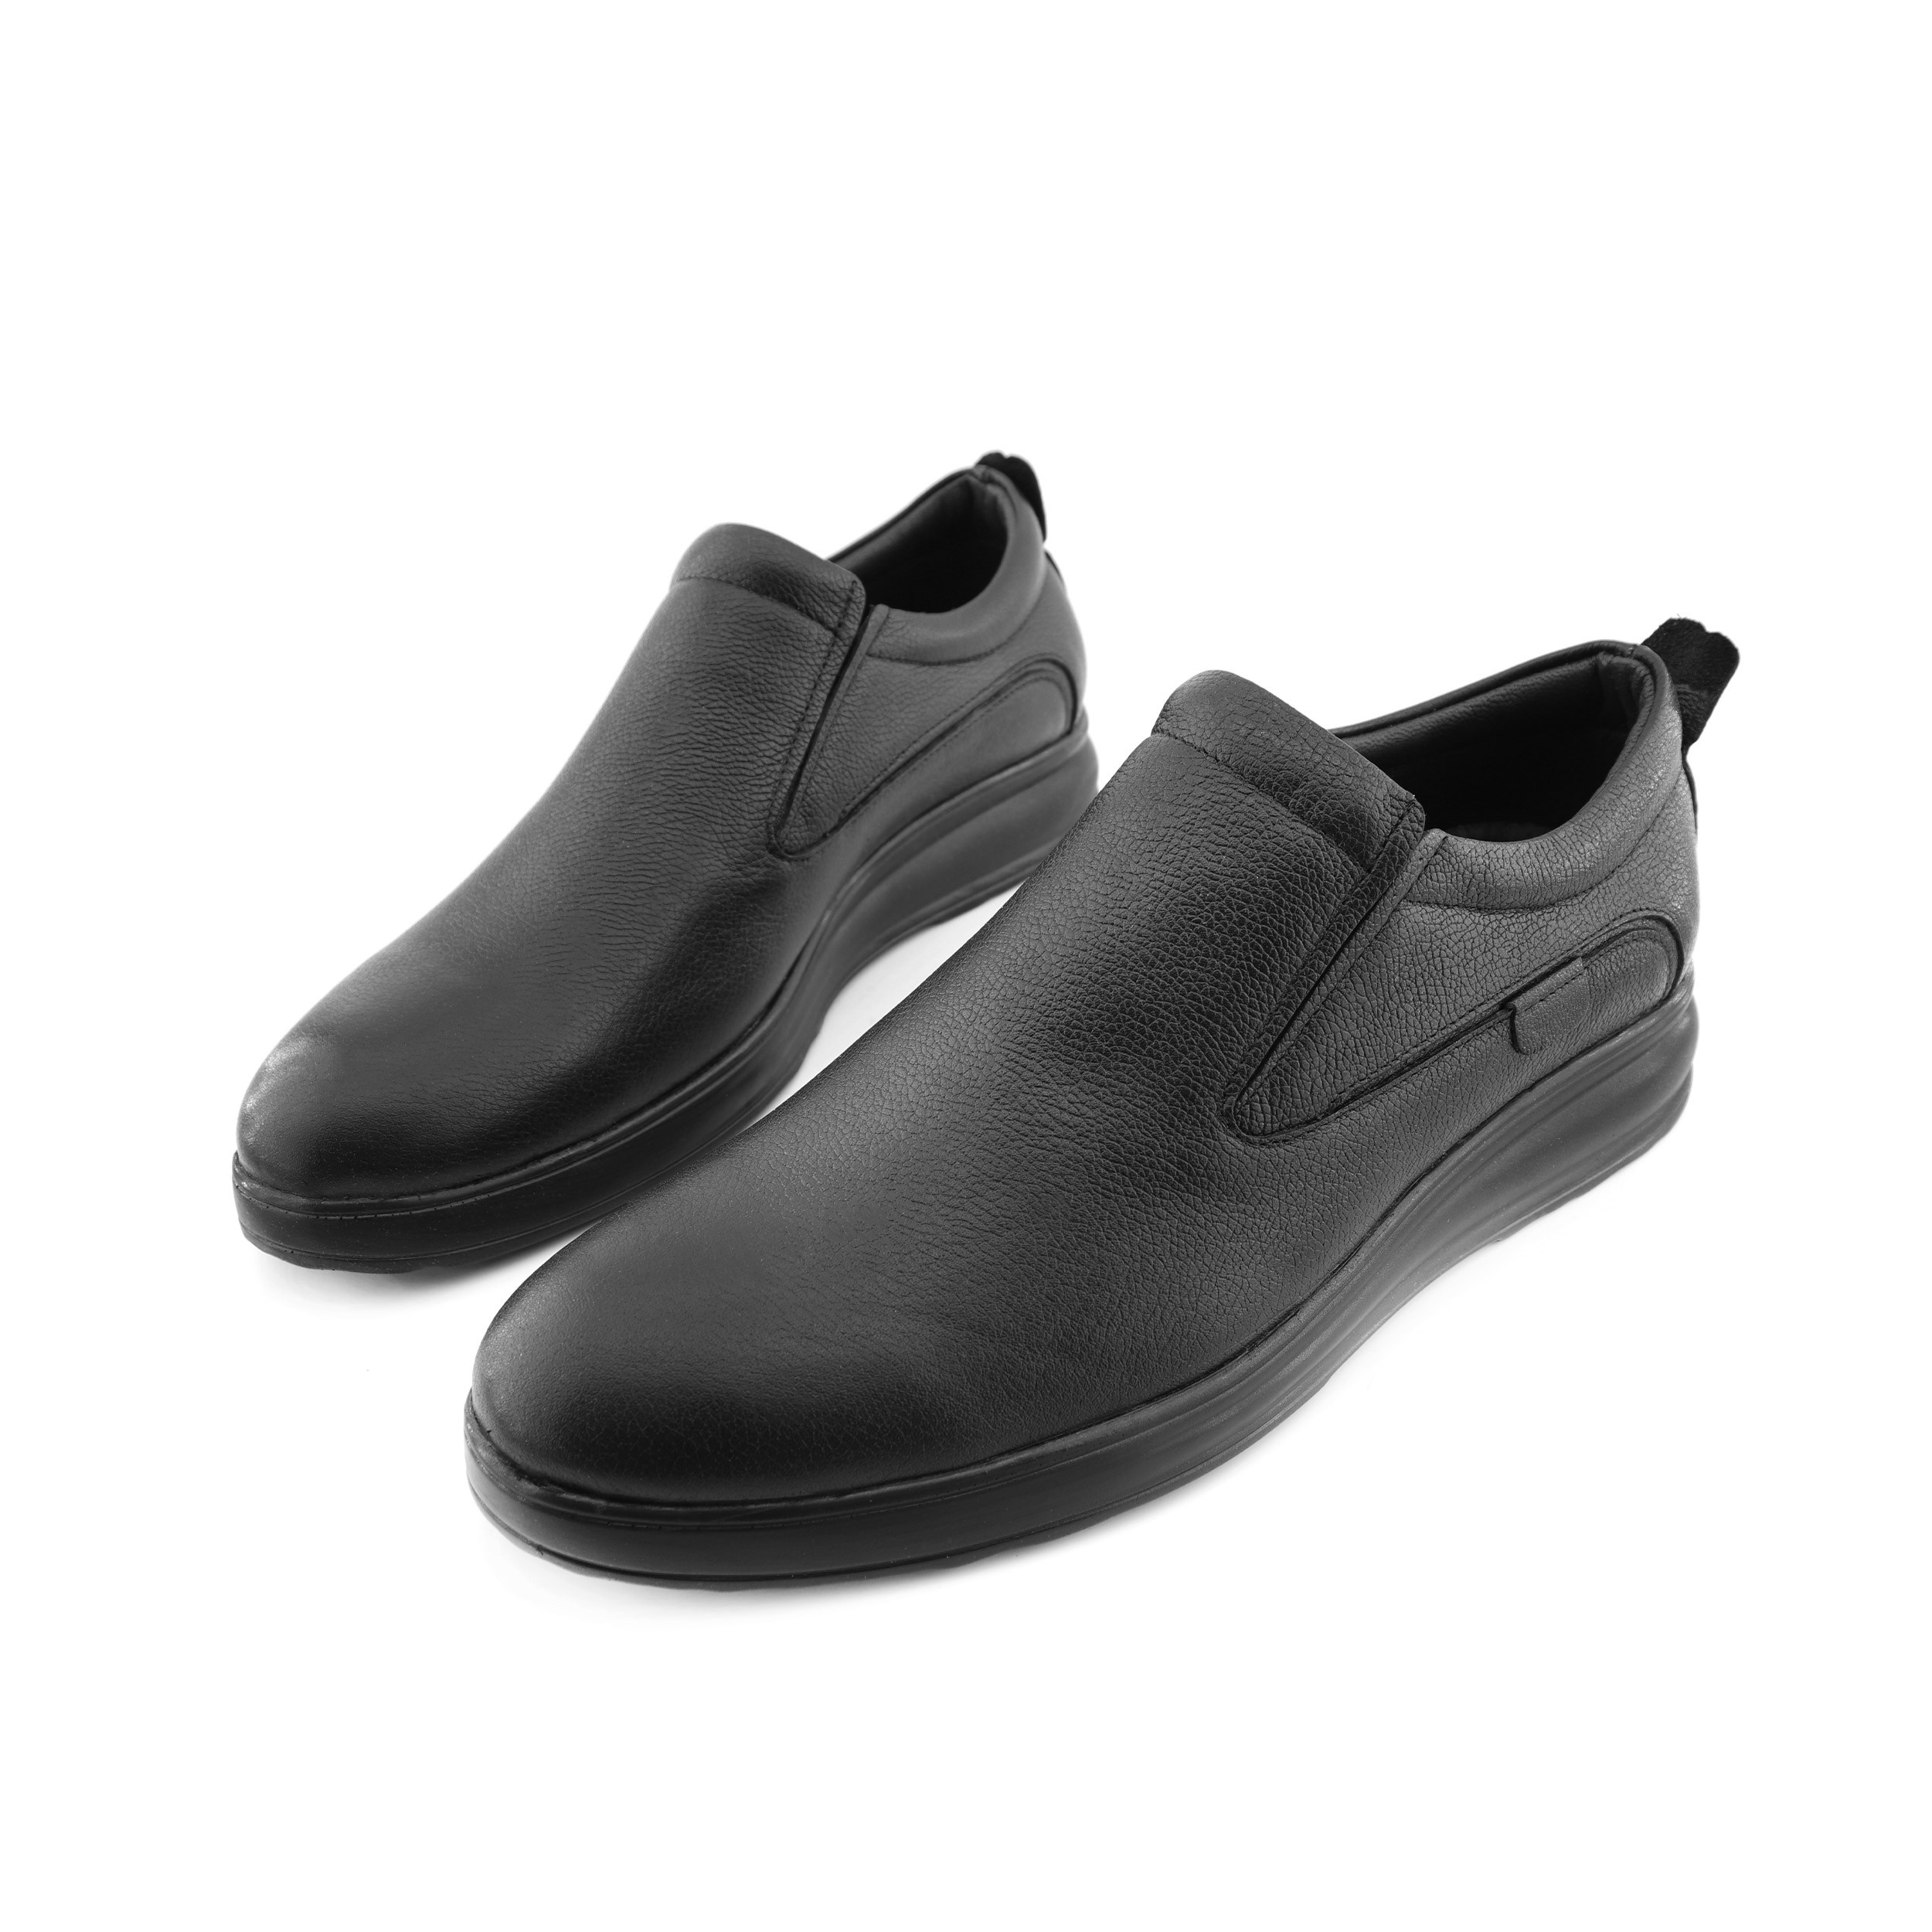 خرید آنلاین کفش طبی مردانه پاتکان مدل s441 کد 01